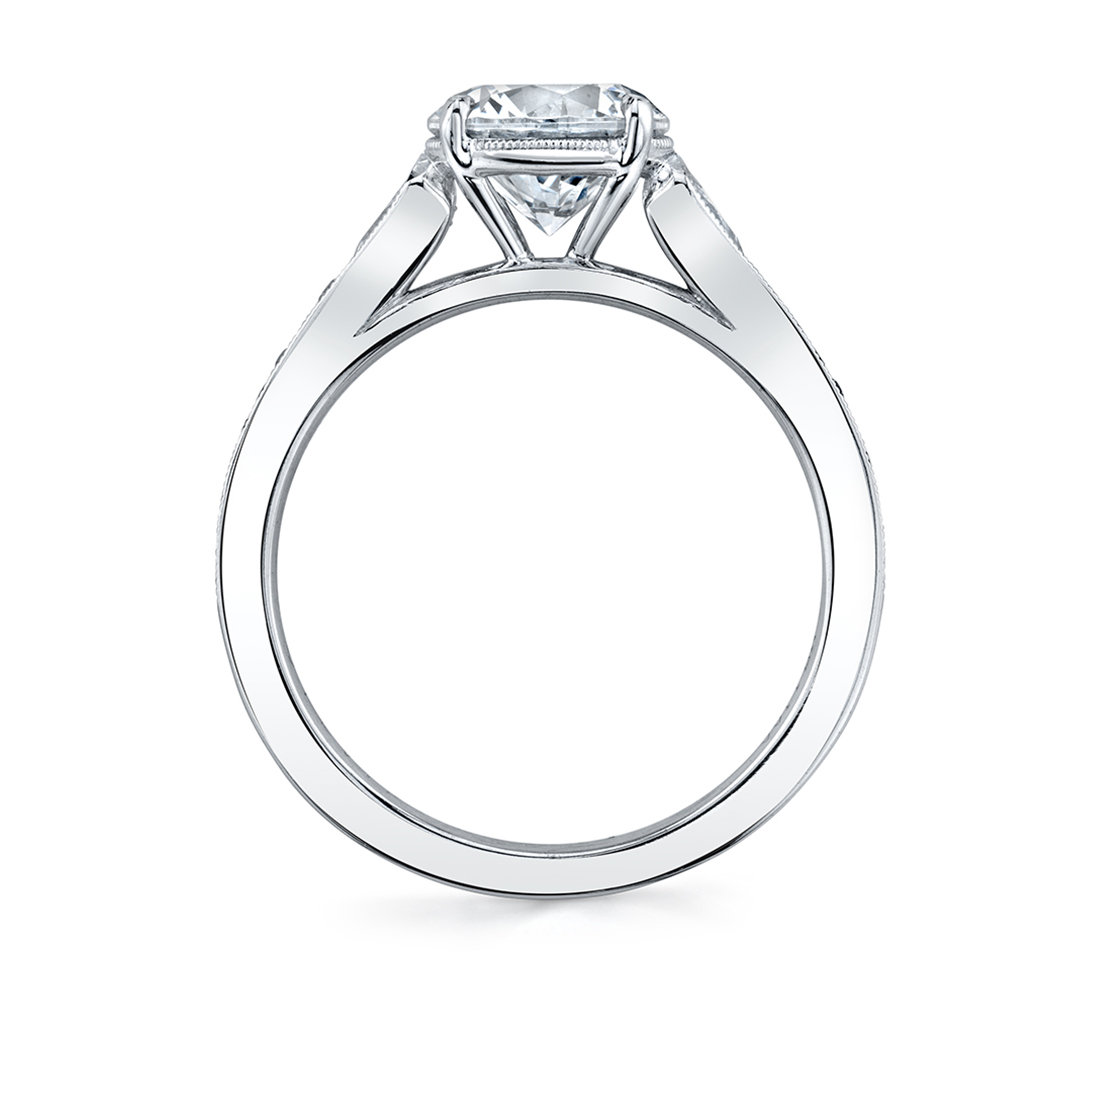 Profile of a Unique Engagement Ring - Esmeralda by Sylvie